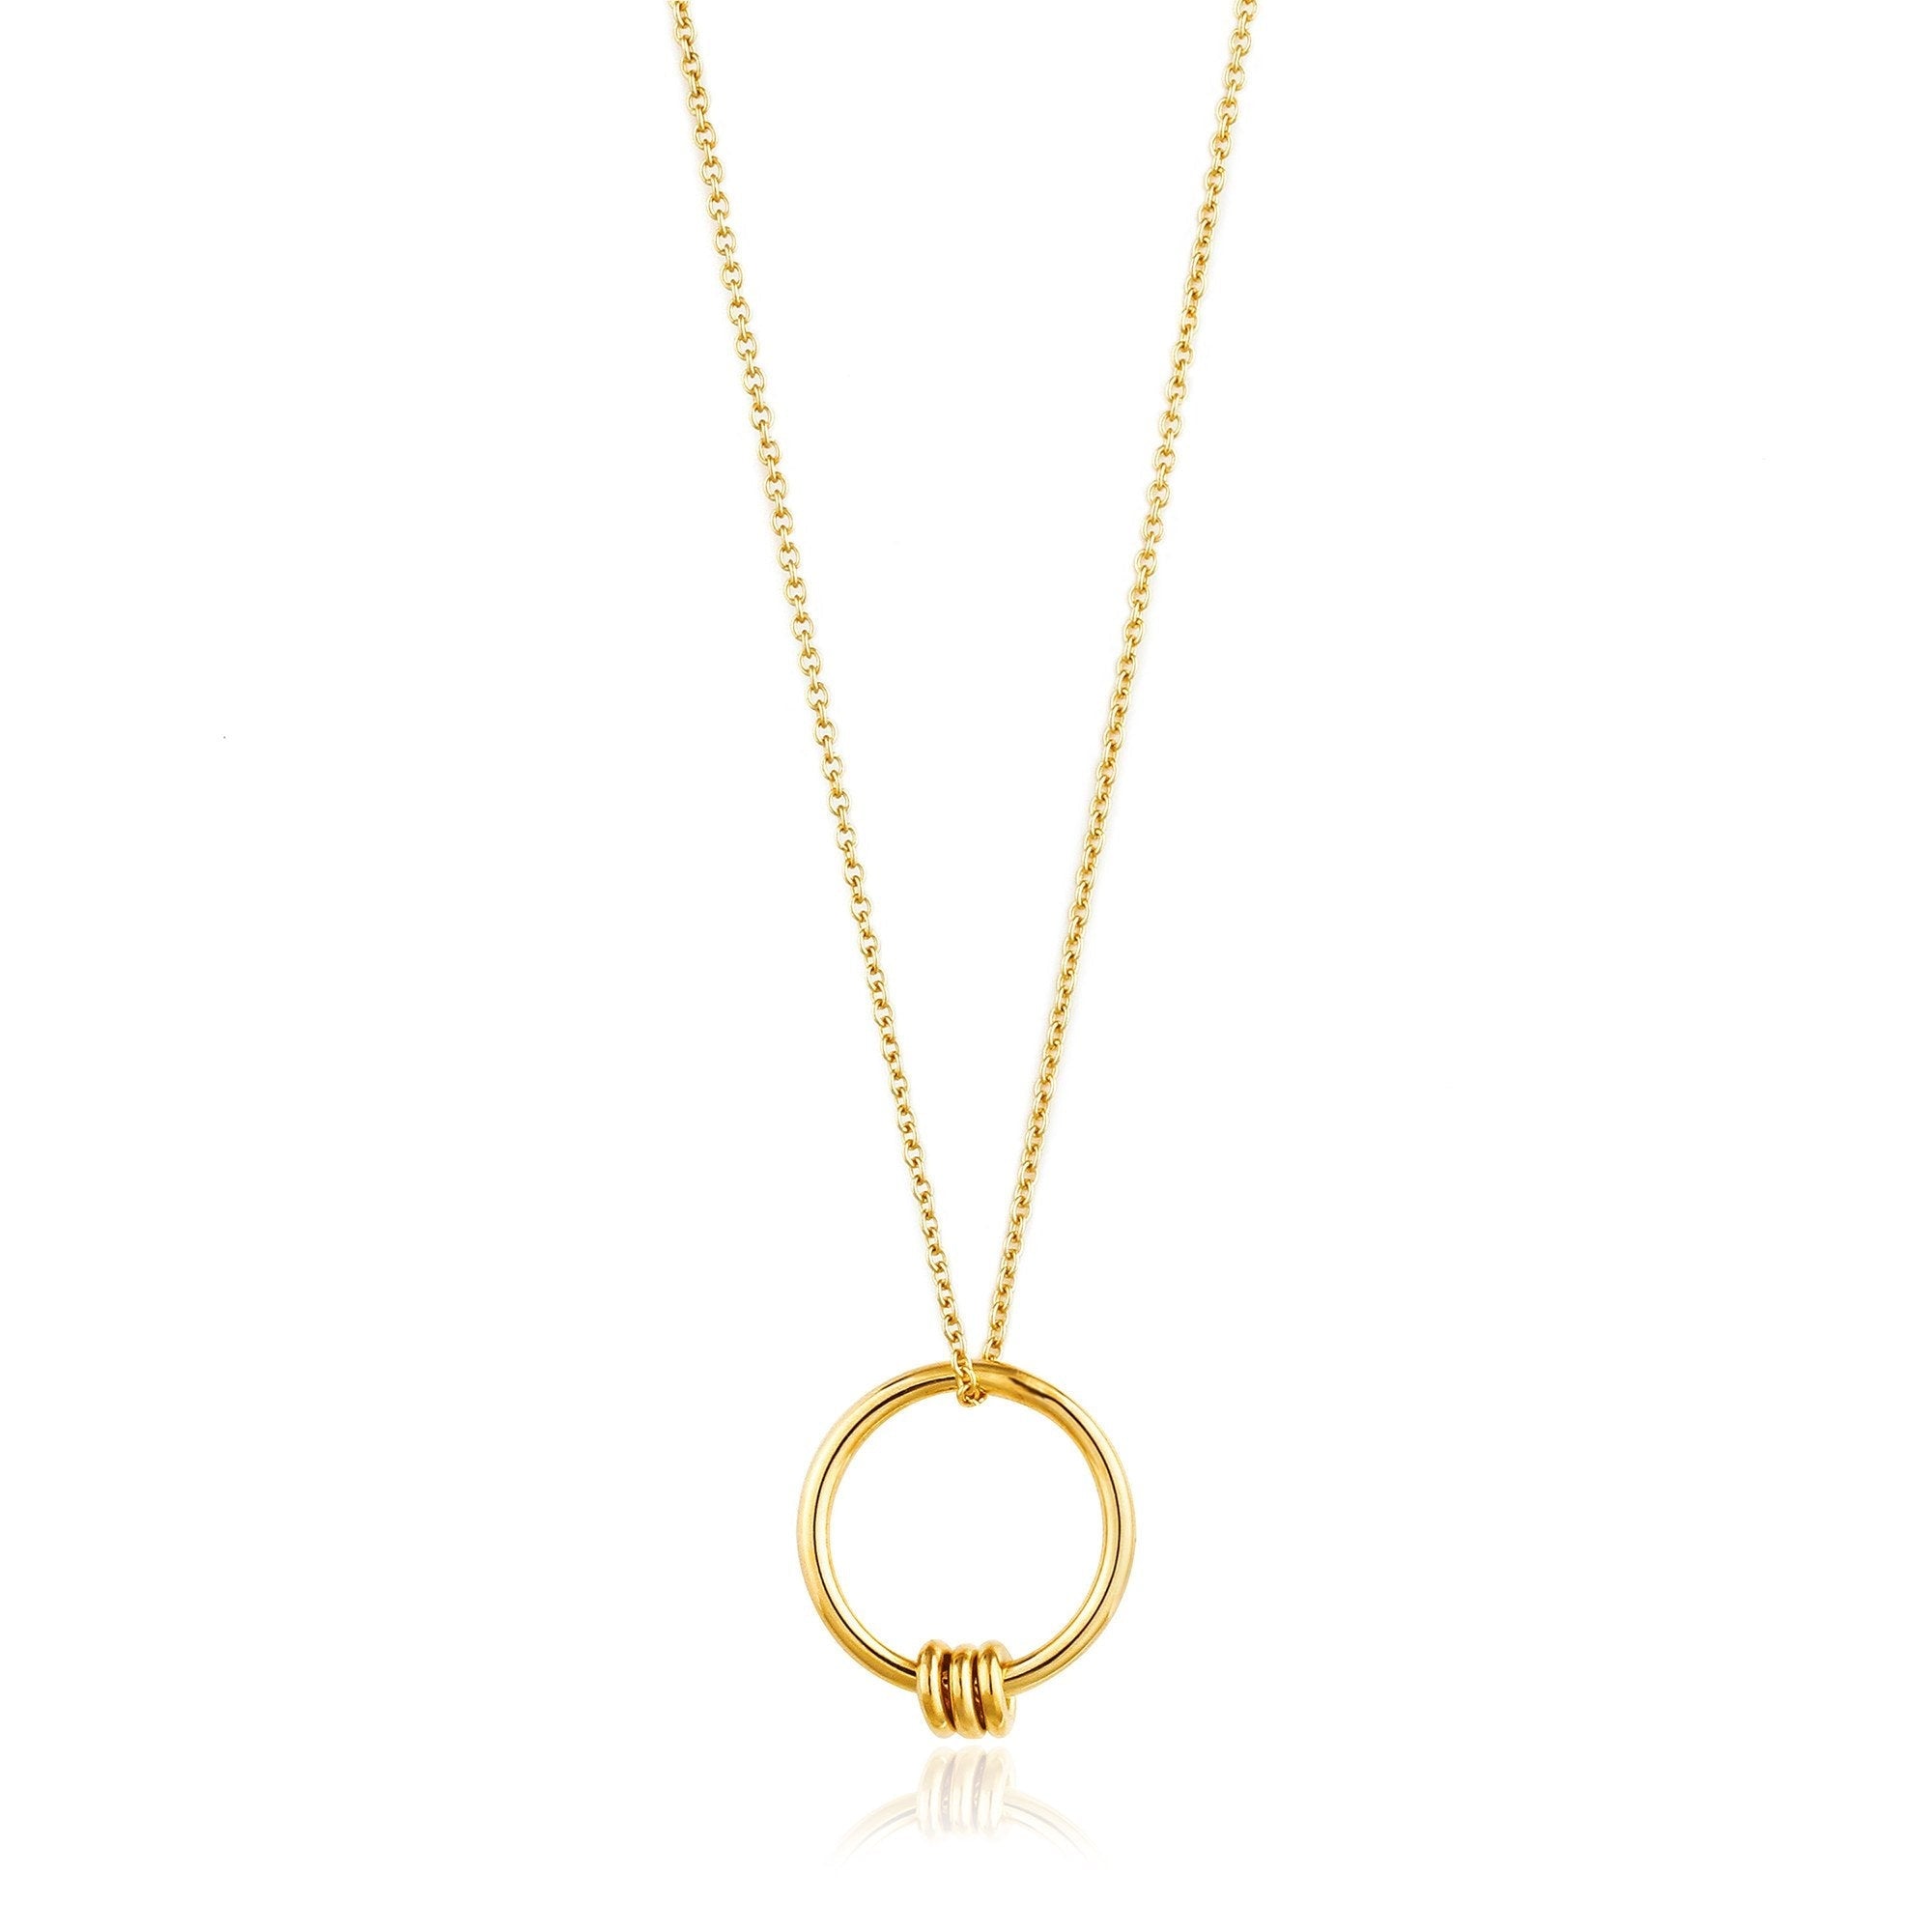 Collar Ania Haie Circle Necklace de plata bañada en oro